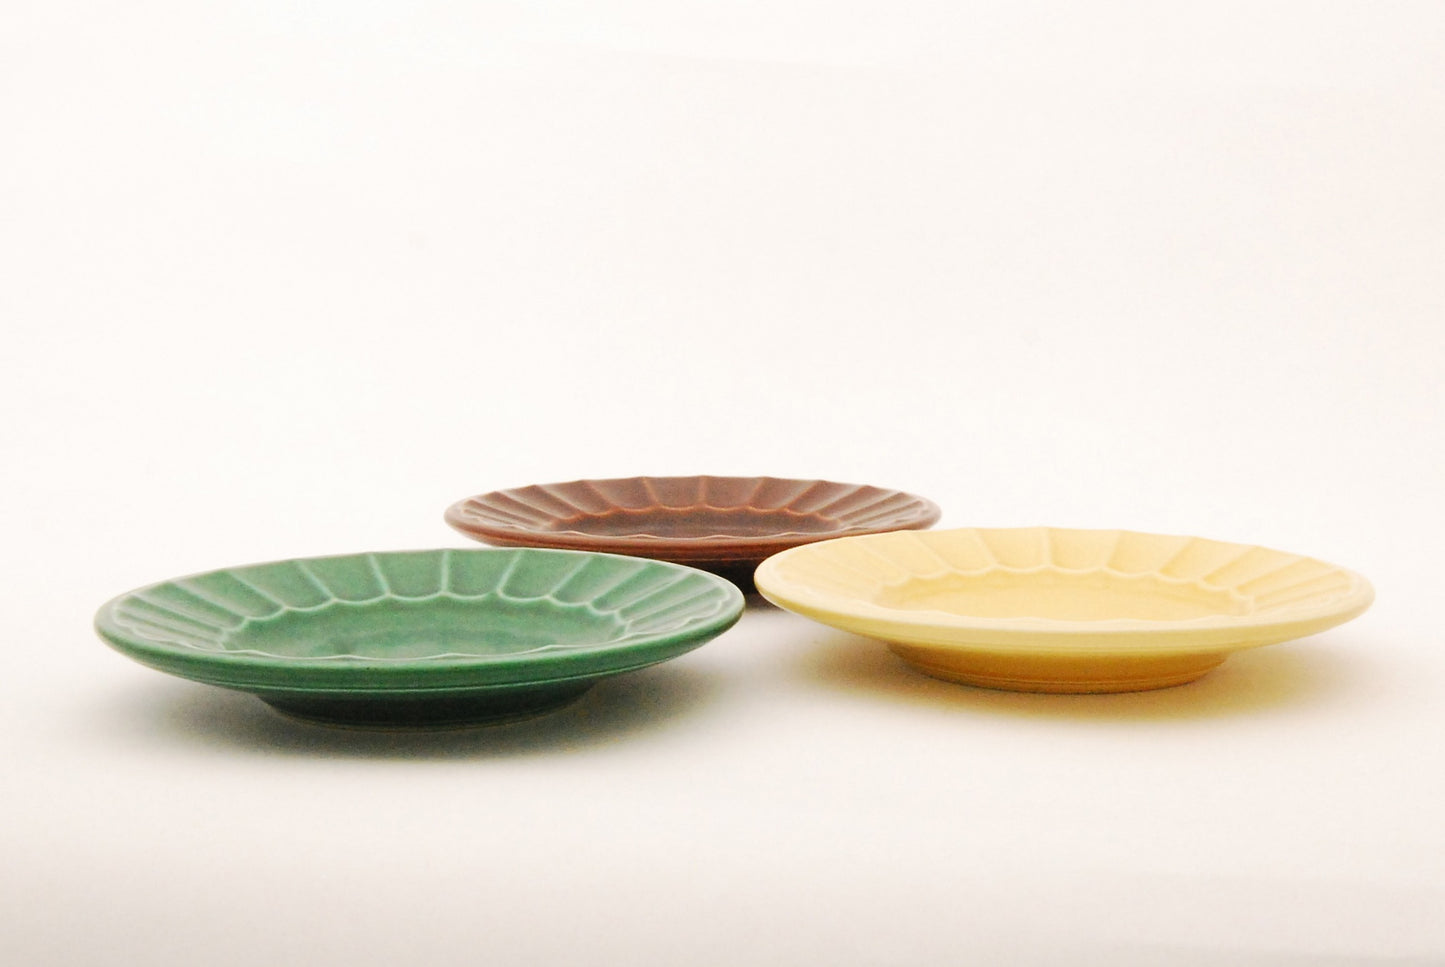 Marselis plates by Nils Thorsson